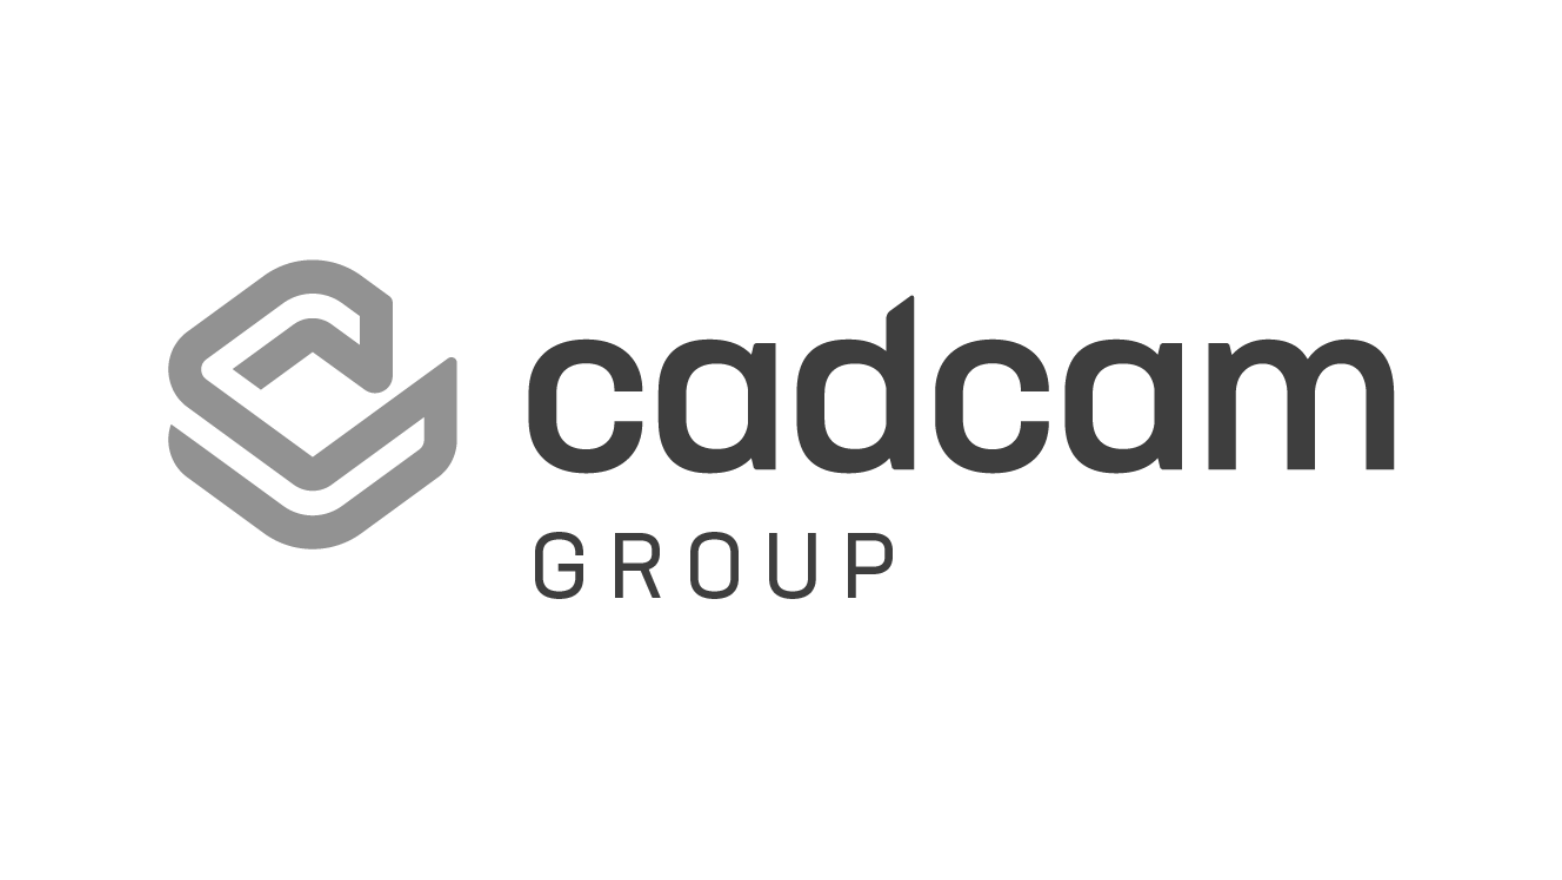 CADCAM Group Logo